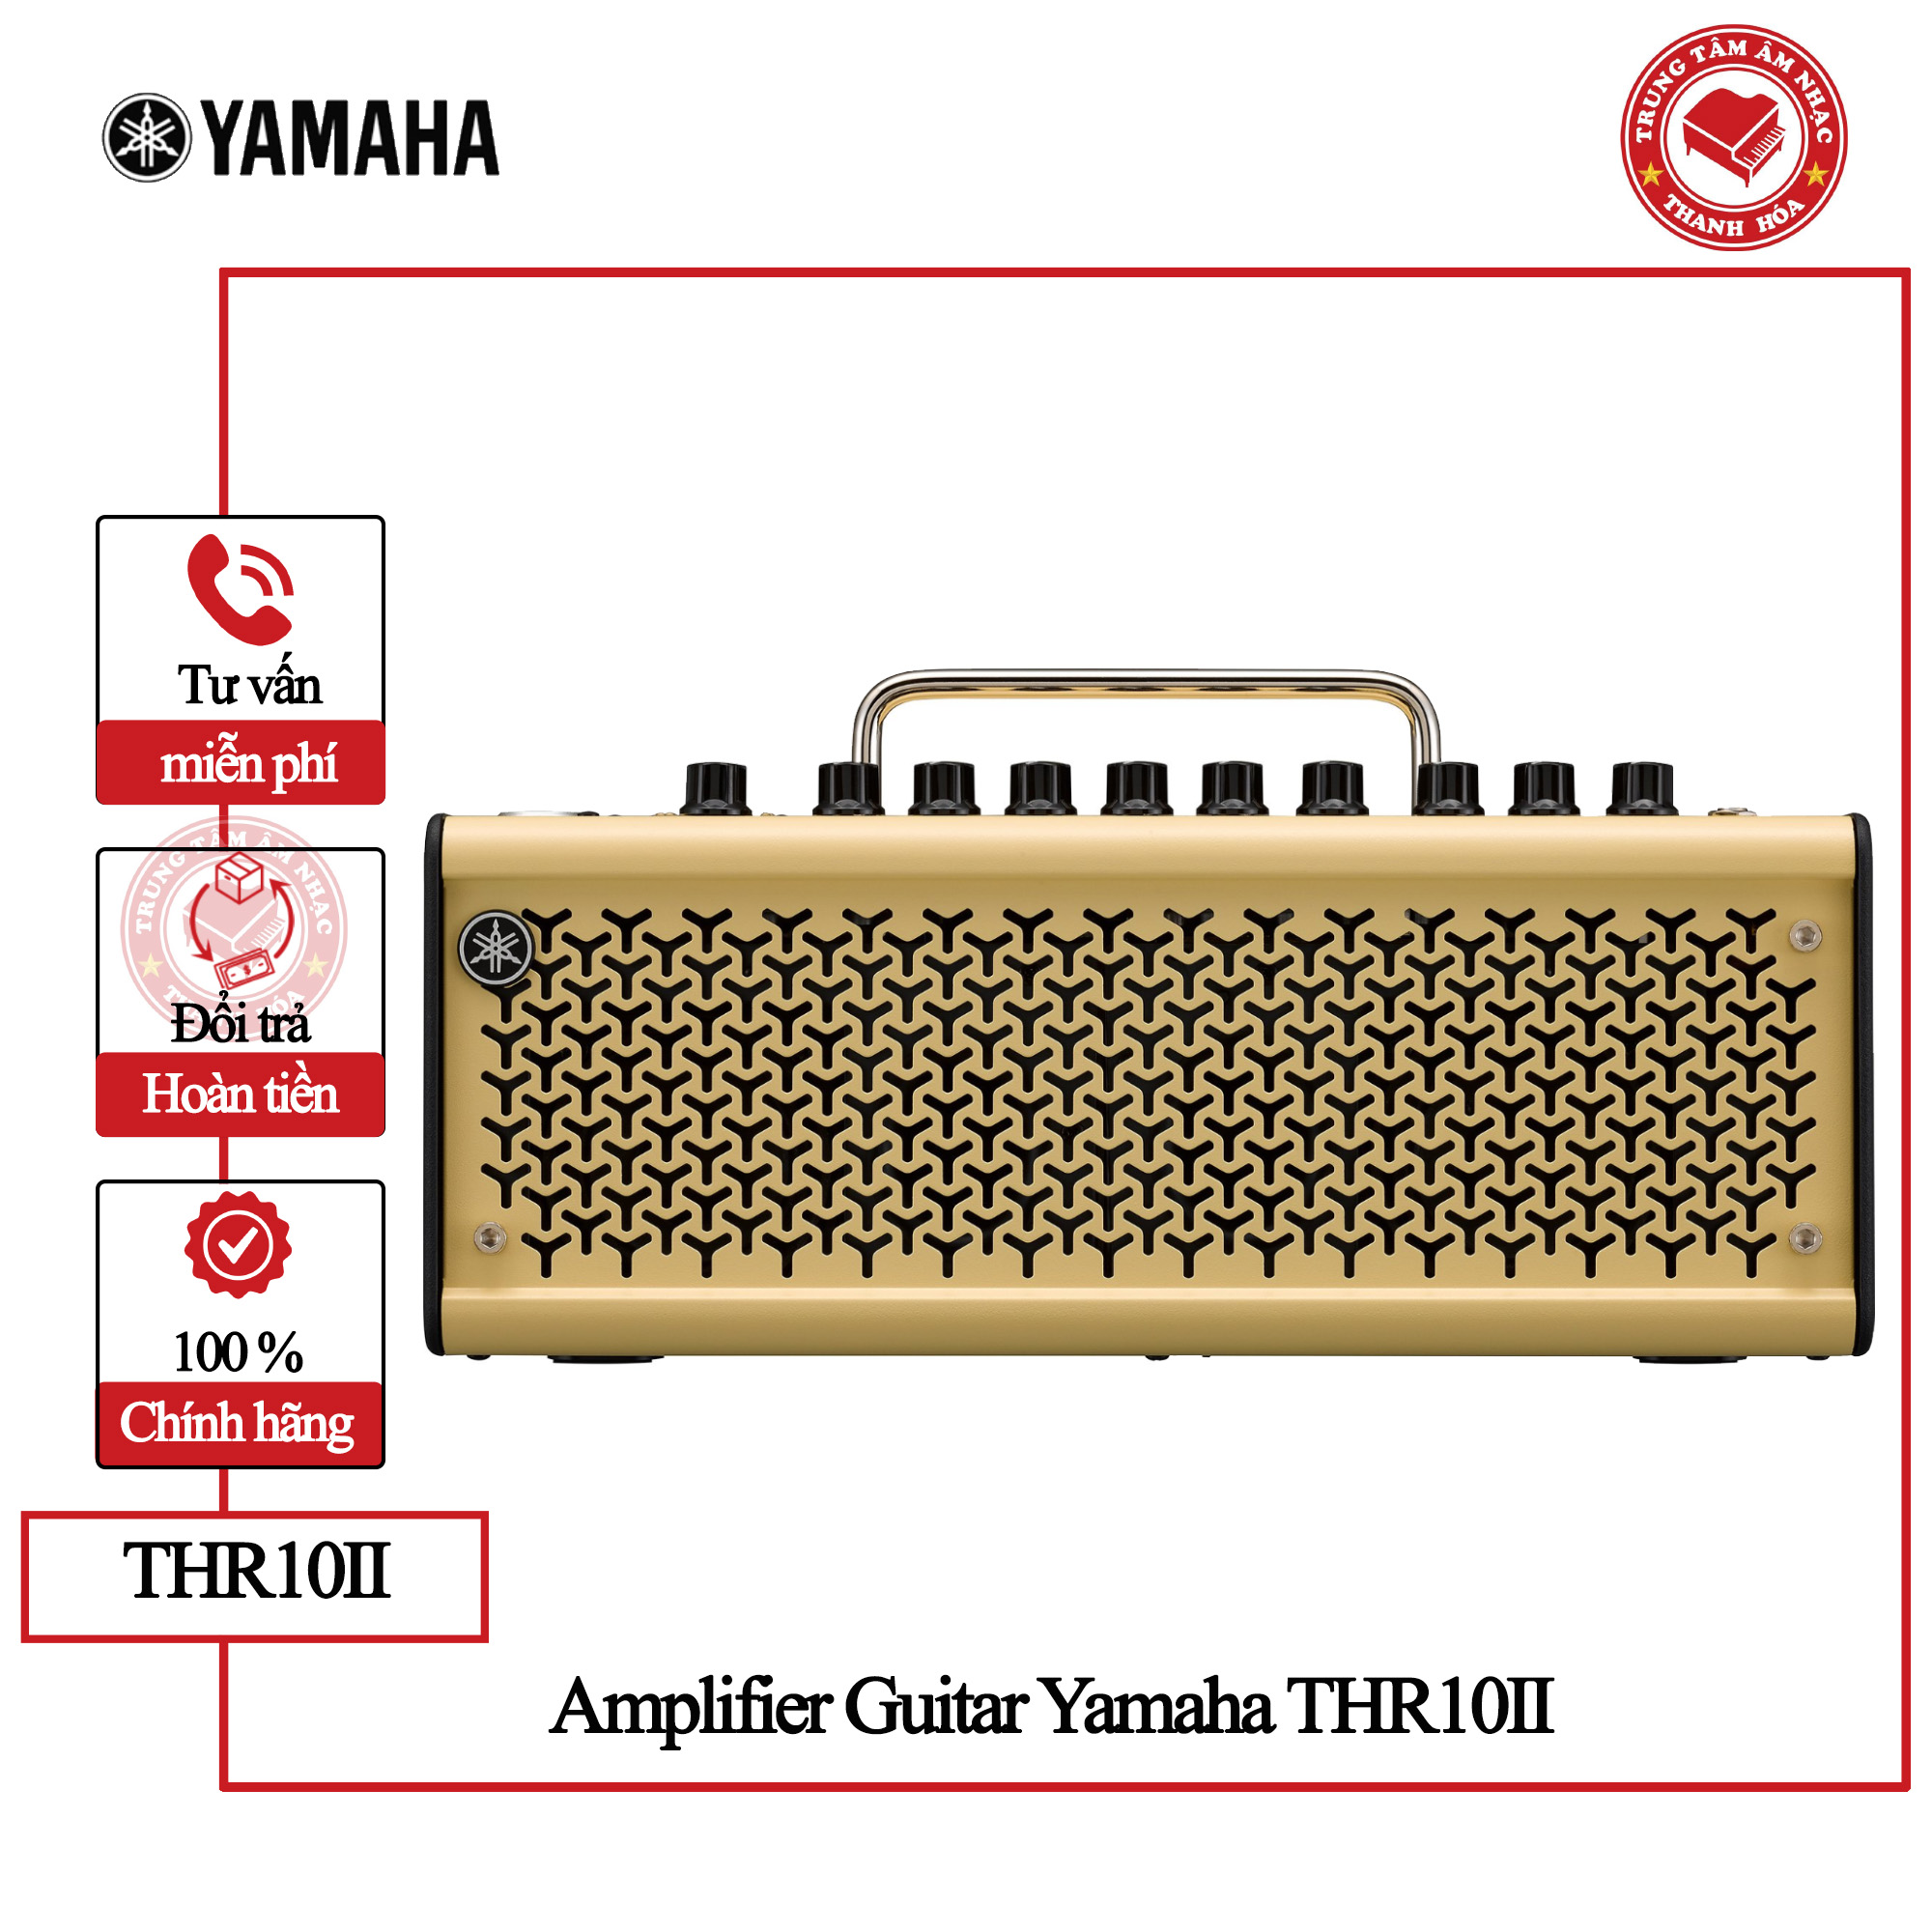 Amplifier Guitar Yamaha THR10II - Hàng chính hãng